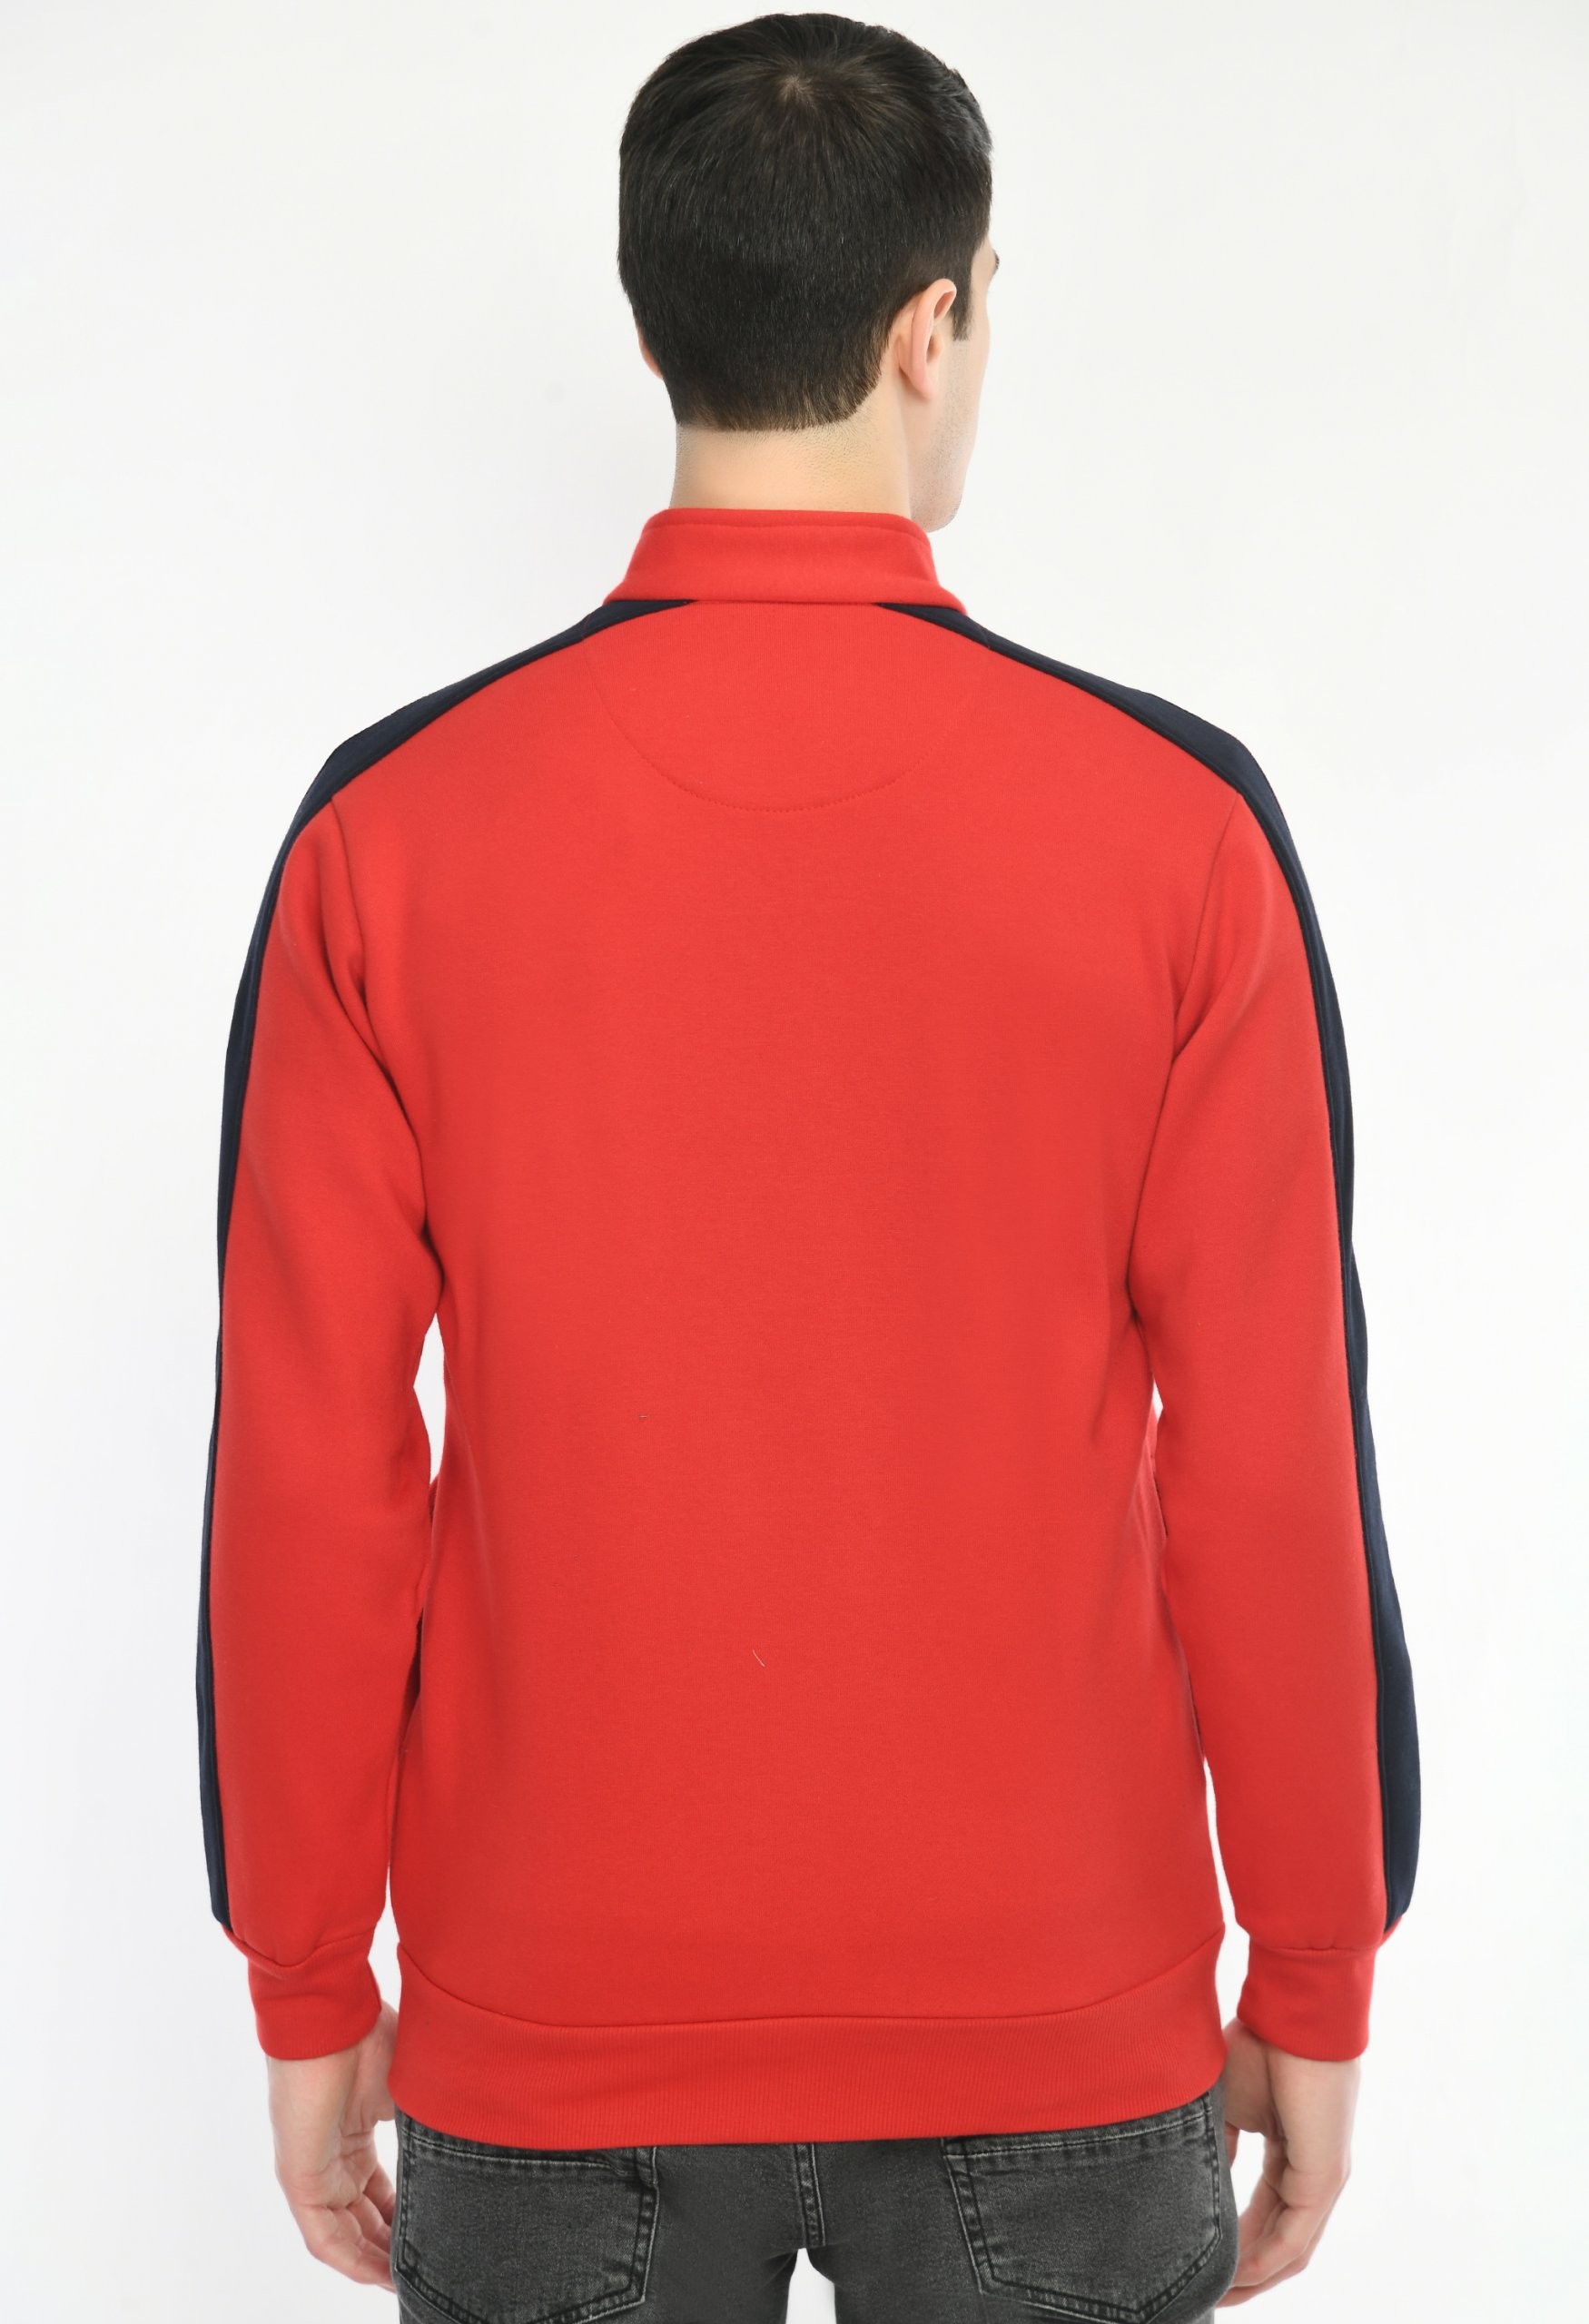 Red Coloured Sweatshirt by Deerdo